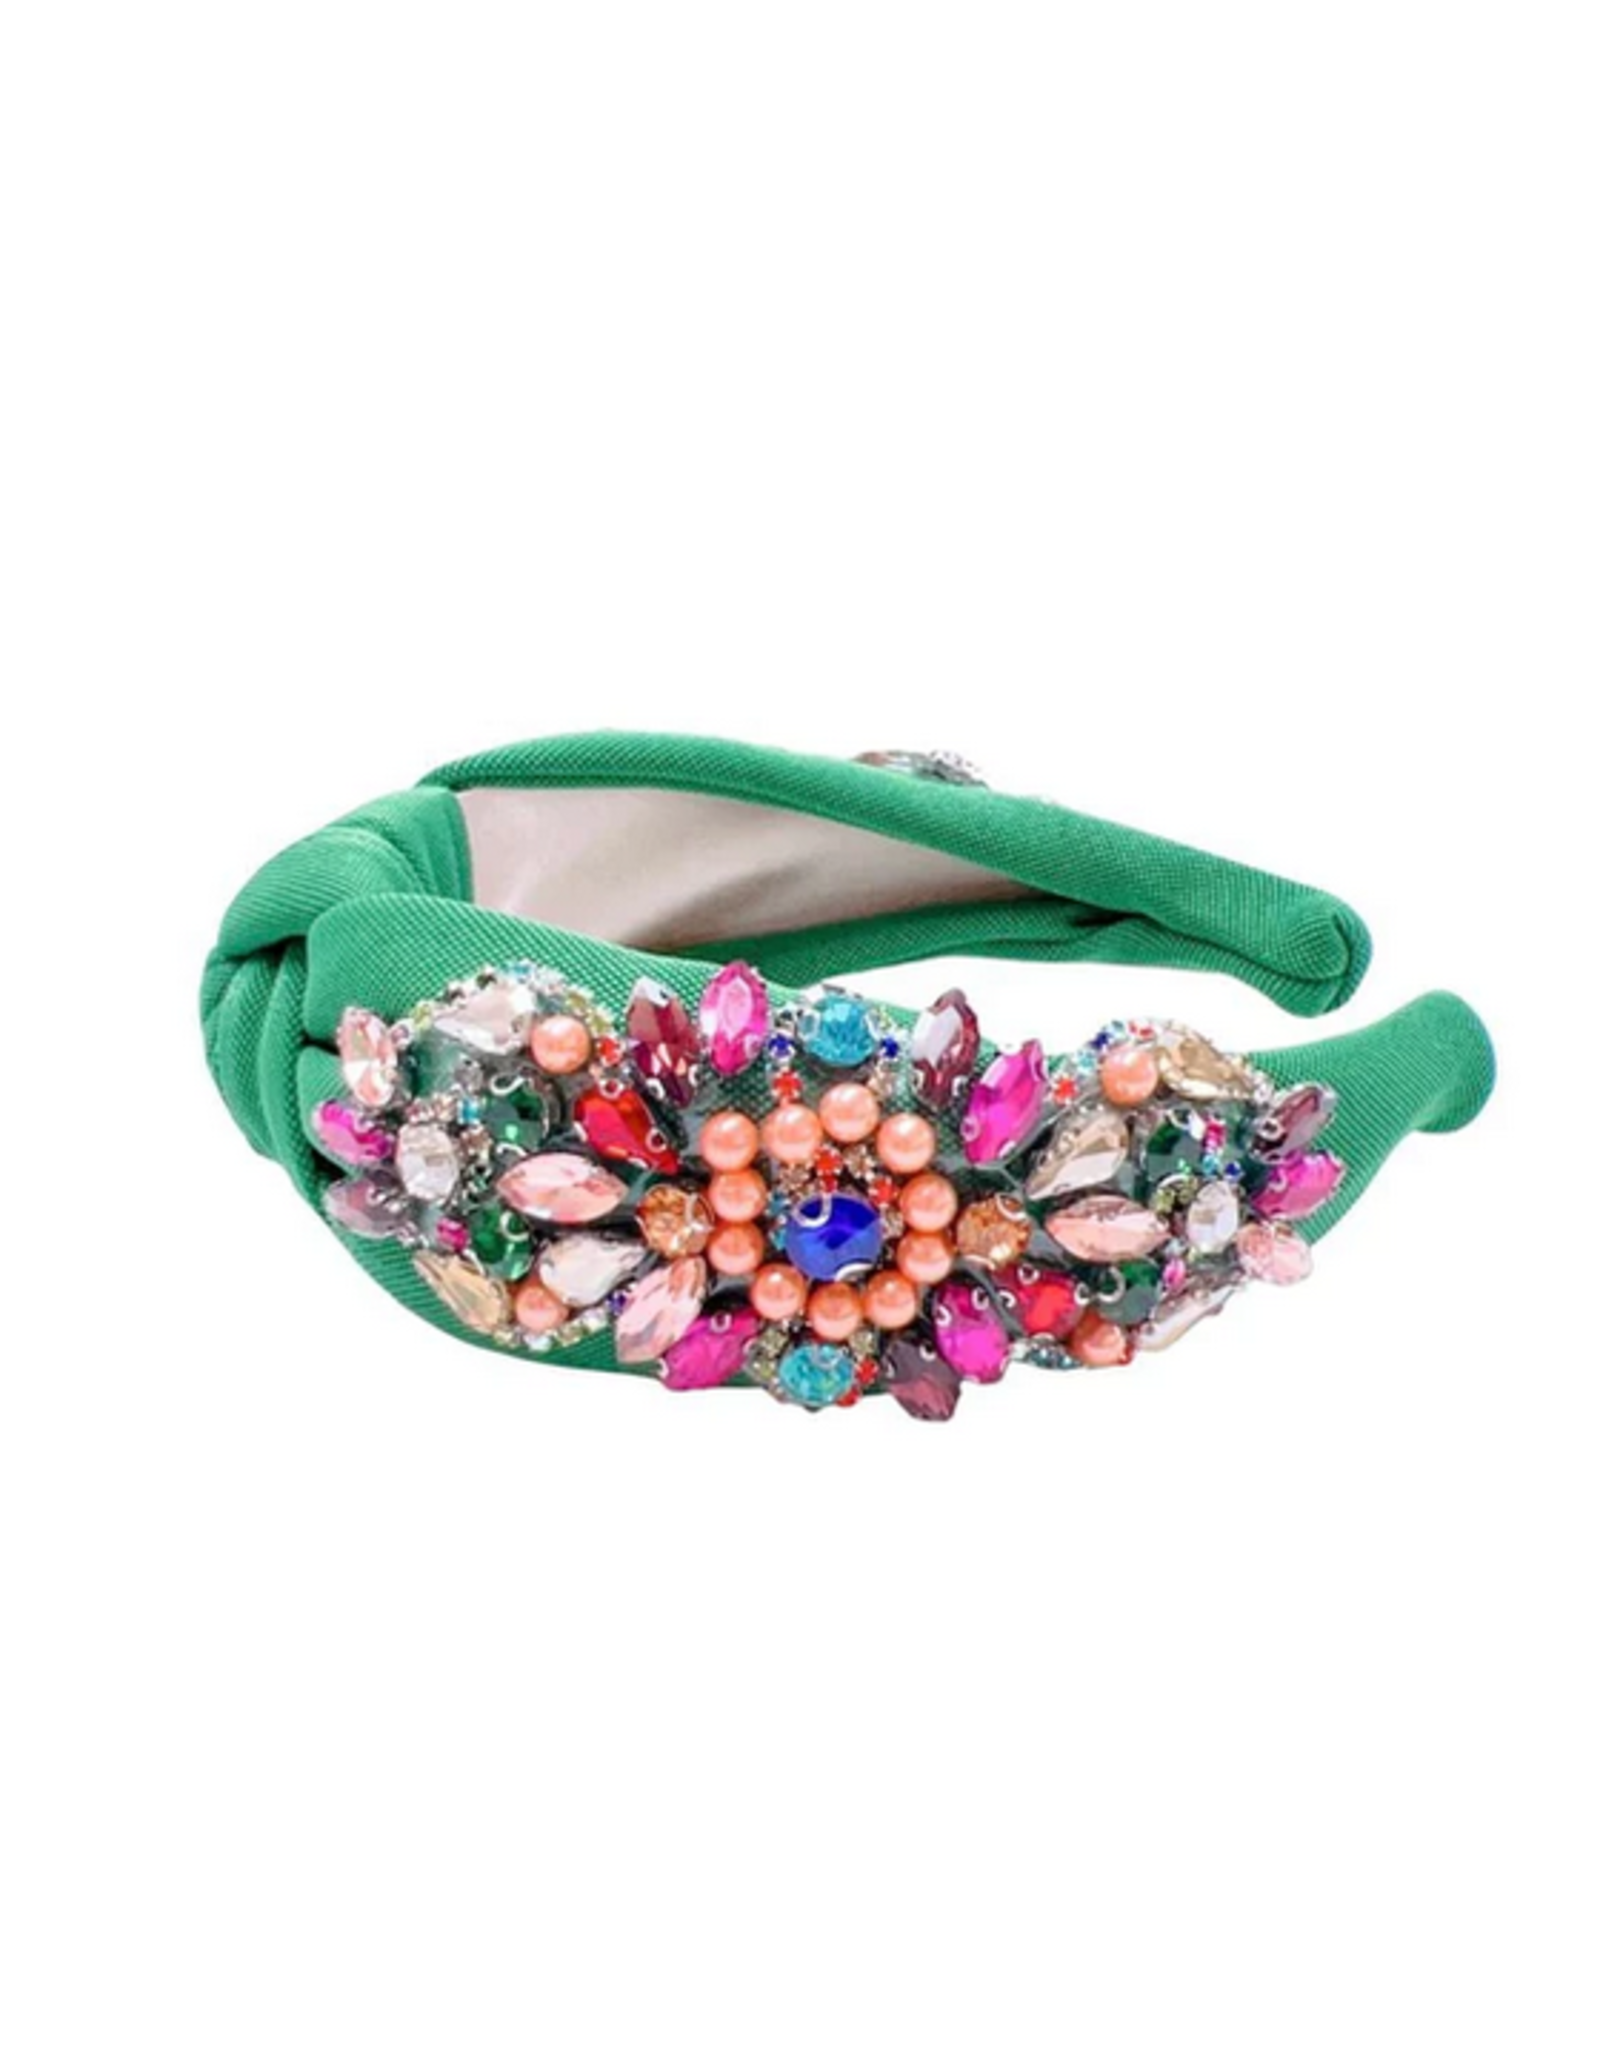 Treasure Jewels Christina Gem Emerald Headband